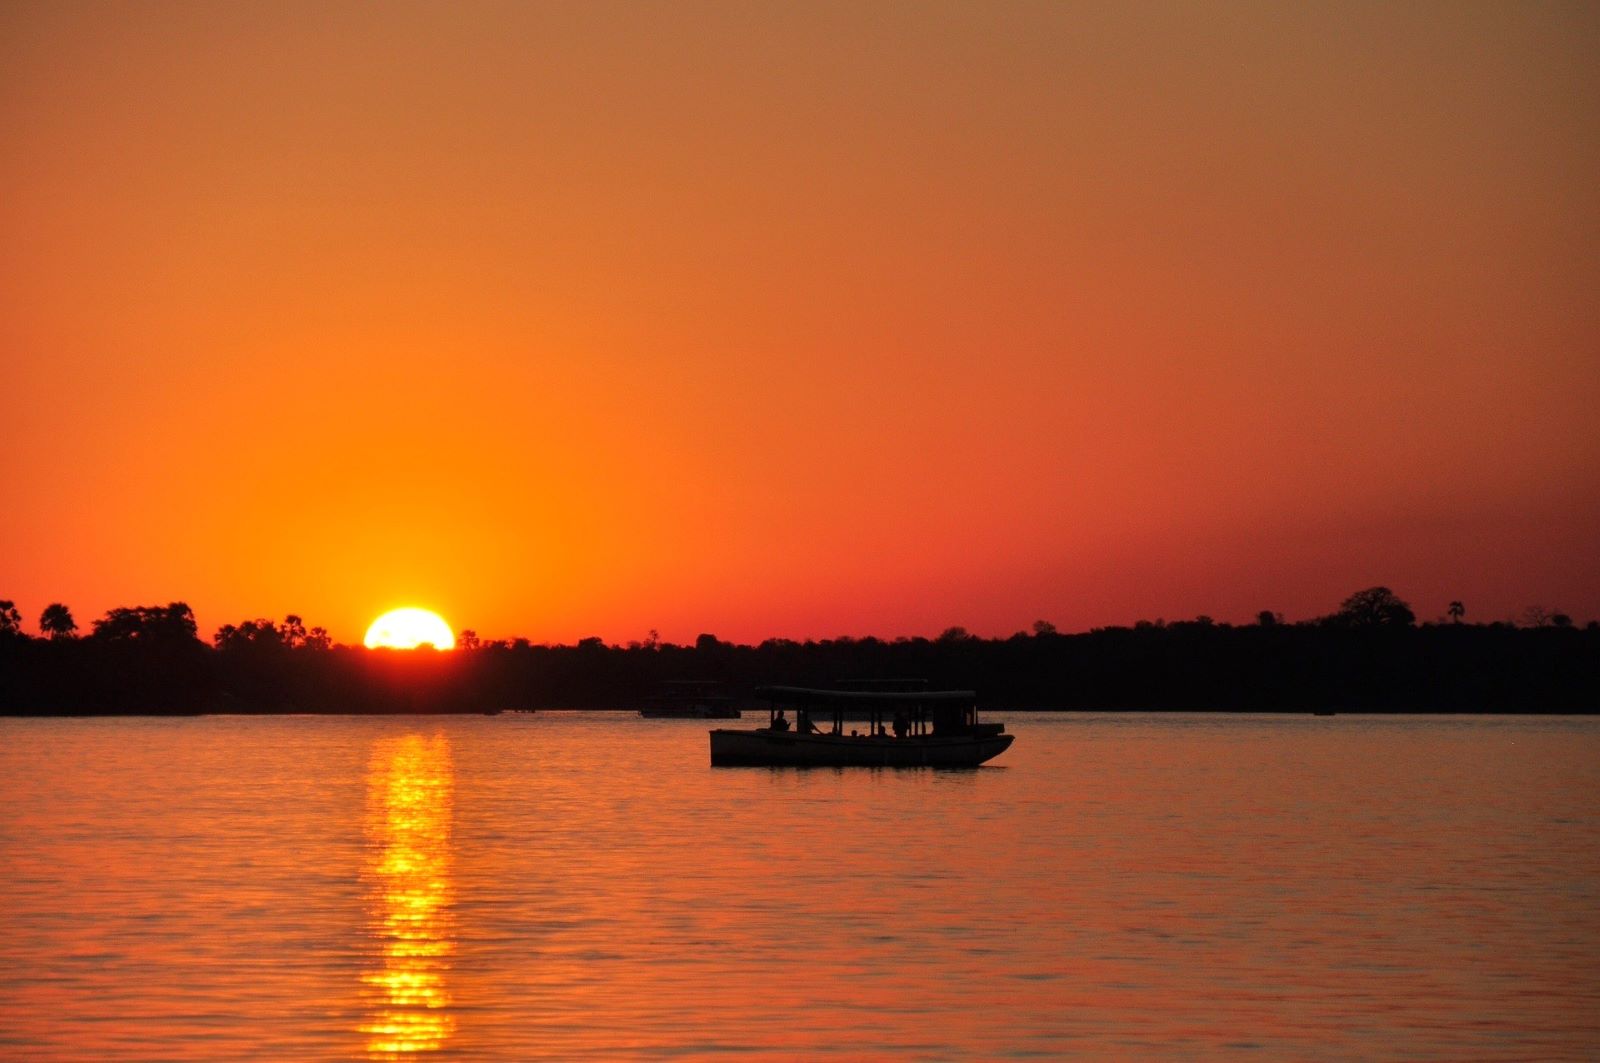 A boat cruise on the Zambezi River at sunset